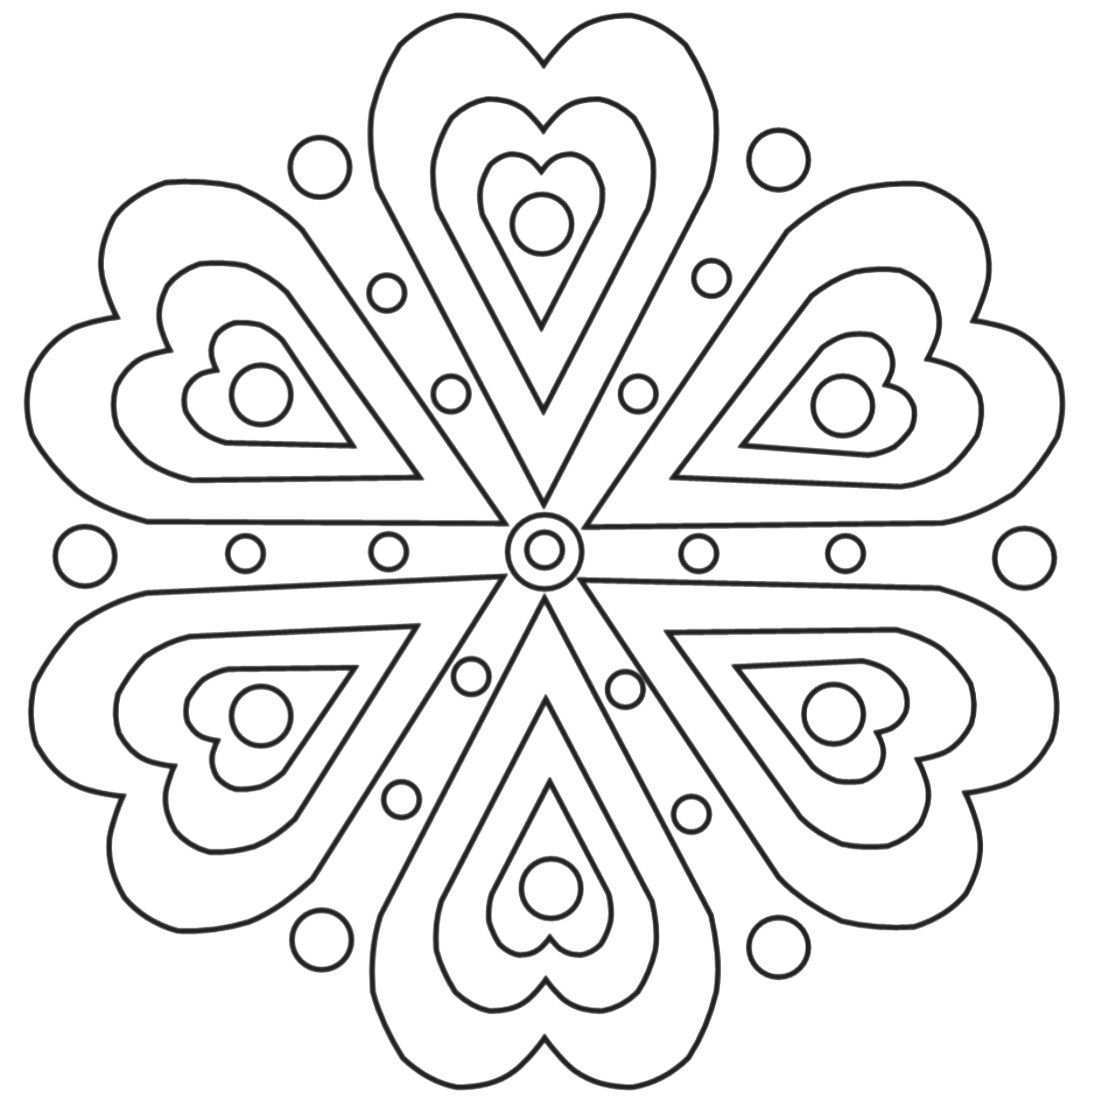 Meditate Mandalas Ancient Art Form Sol Center West Muster Malvorlagen Mandala Malvorlagen Ausmalen